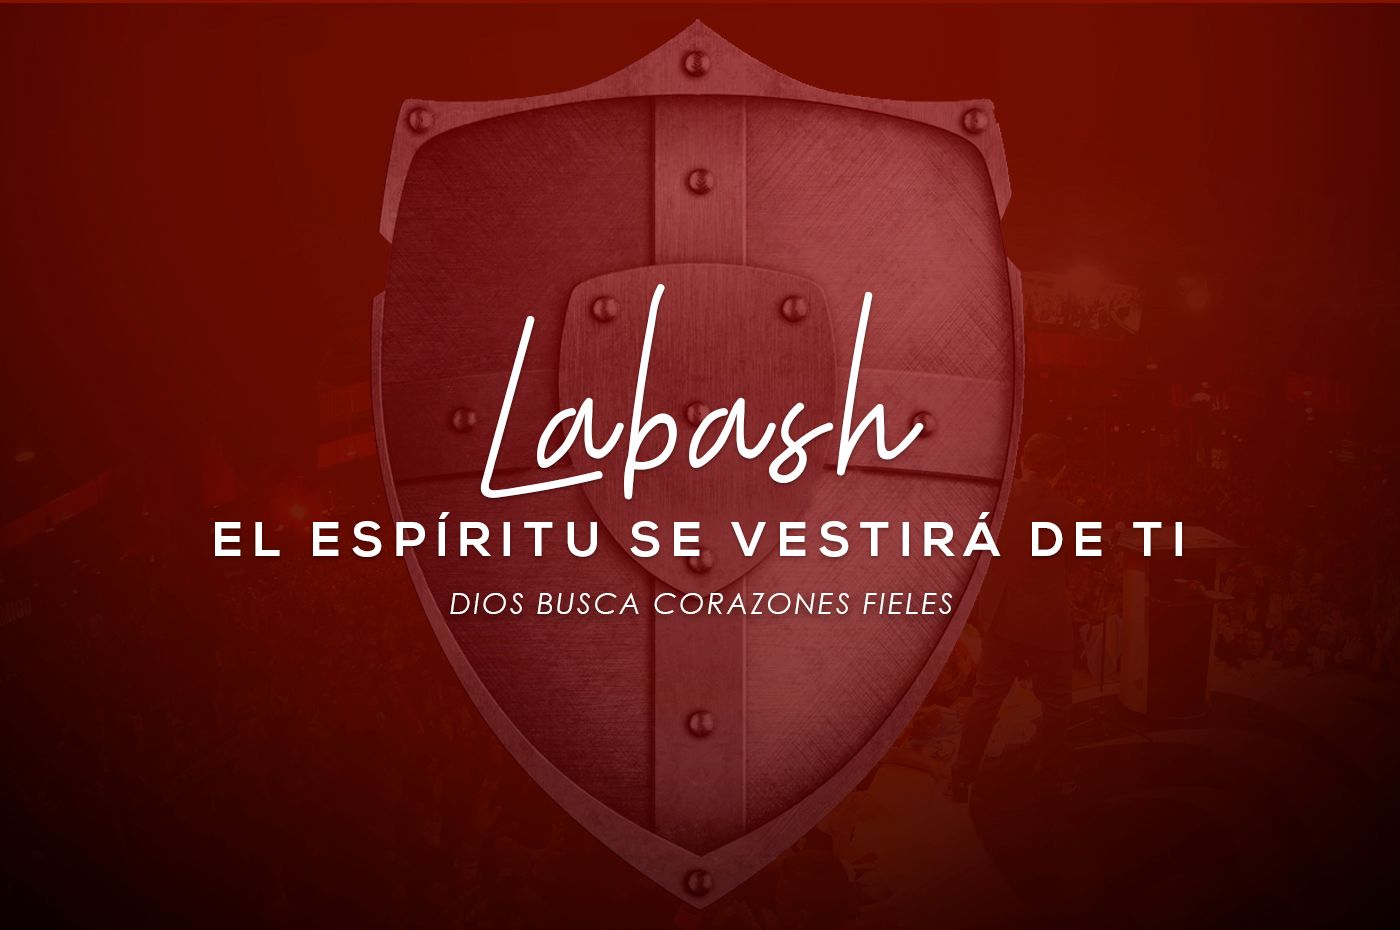 El Espíritu se vestirá de ti – Labash